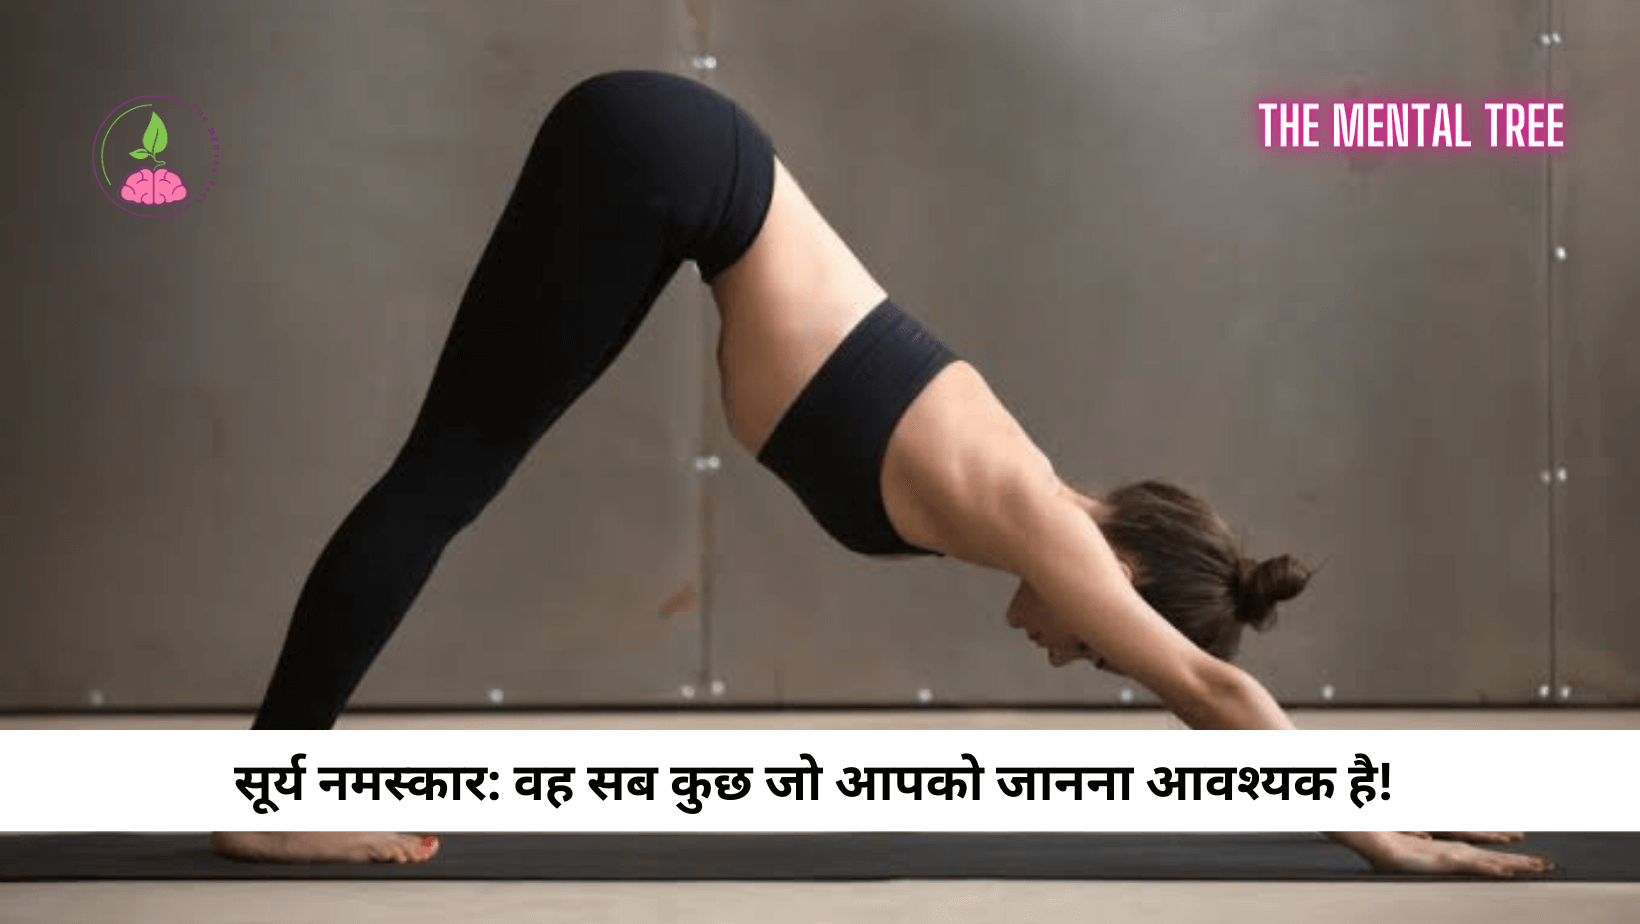 Vrikshasana Benefits And How To Do In Hindi | वृक्षासन करने से शरीर को  मिलेंगे ये 7 फायदे, जानें इसे करने का तरीका | TheHealthSite.com हिंदी